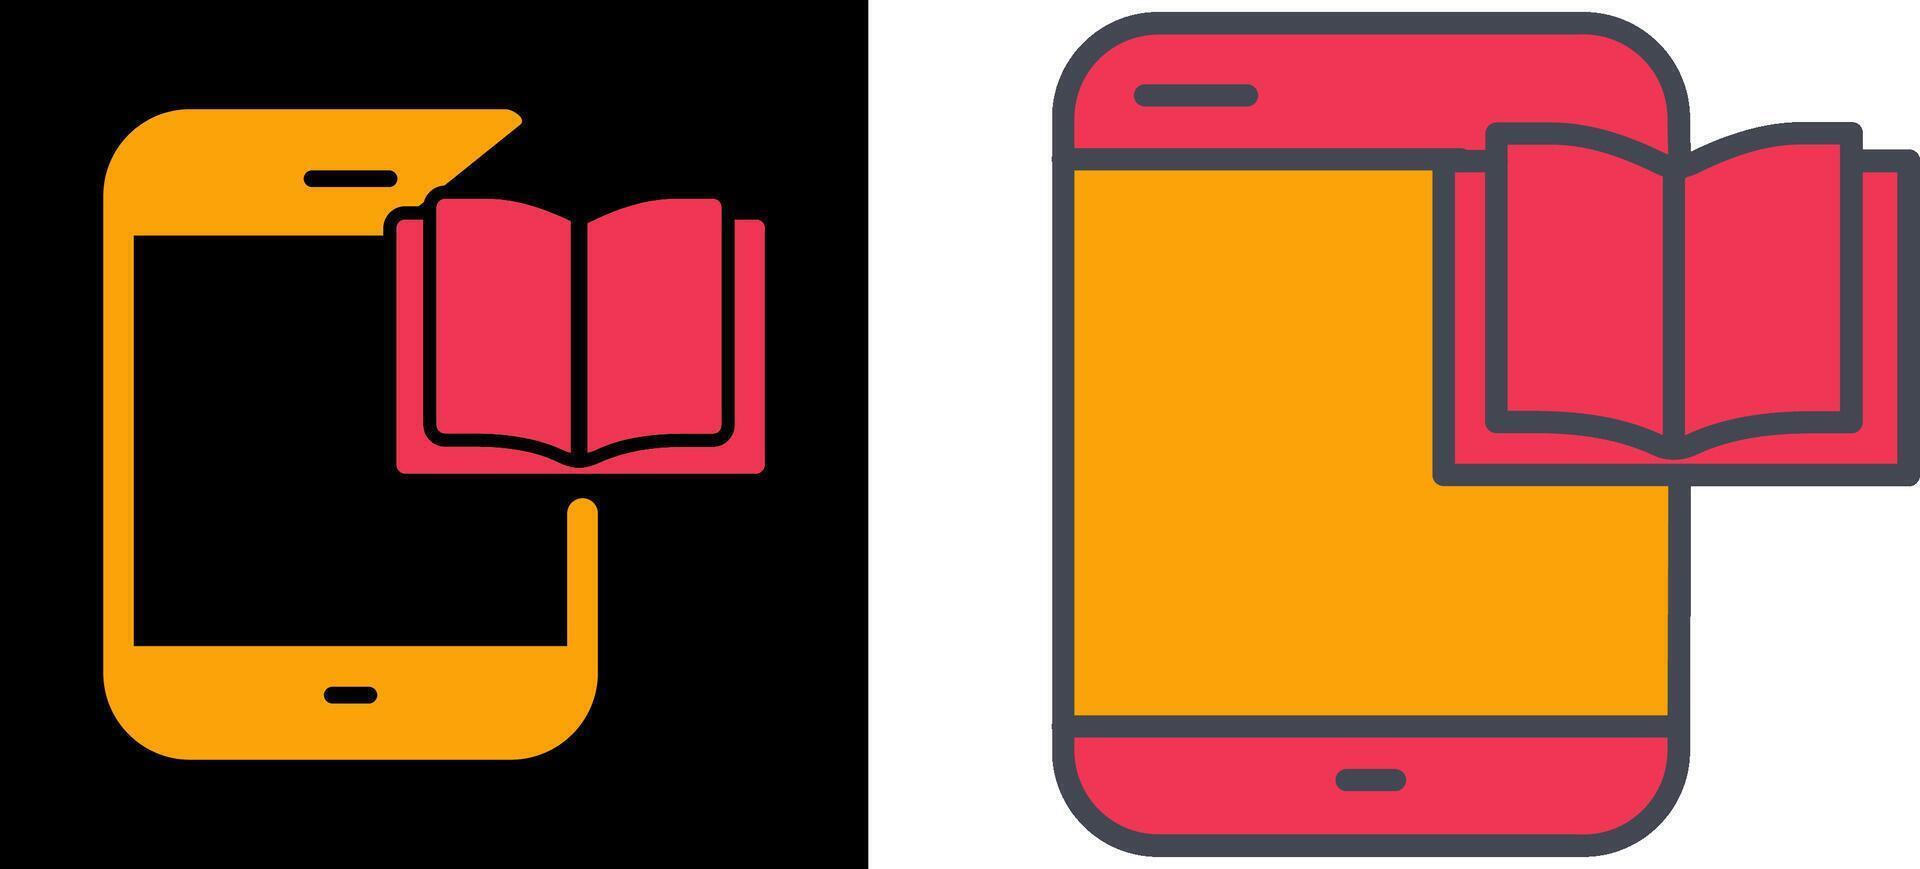 Ebook Icon Design vector